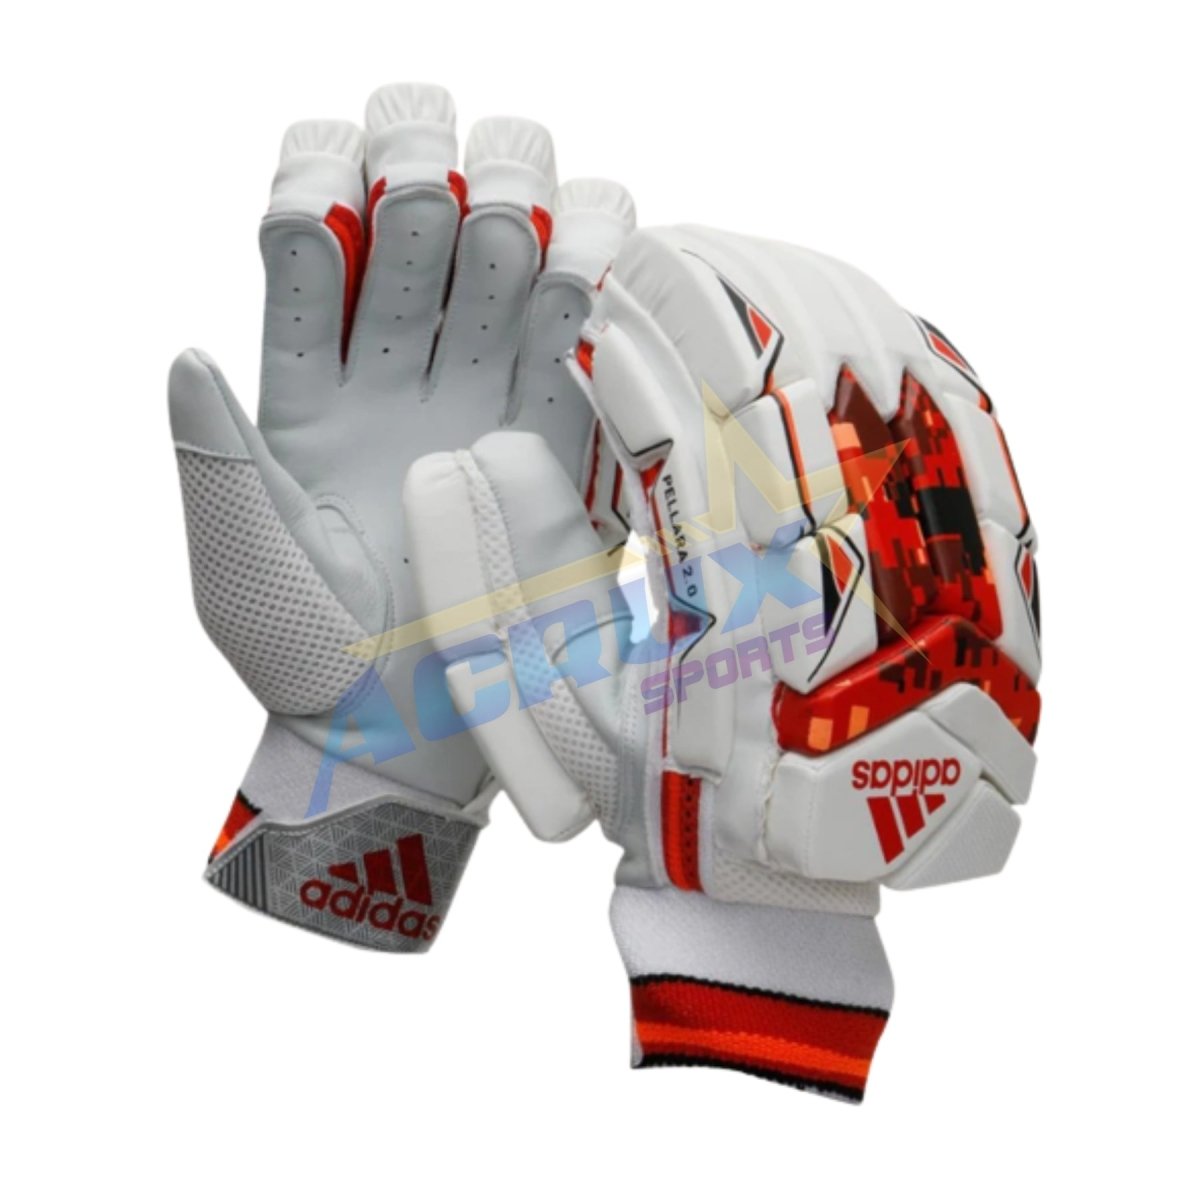 Adidas Pellara 2.0 Red Cricket Batting Gloves